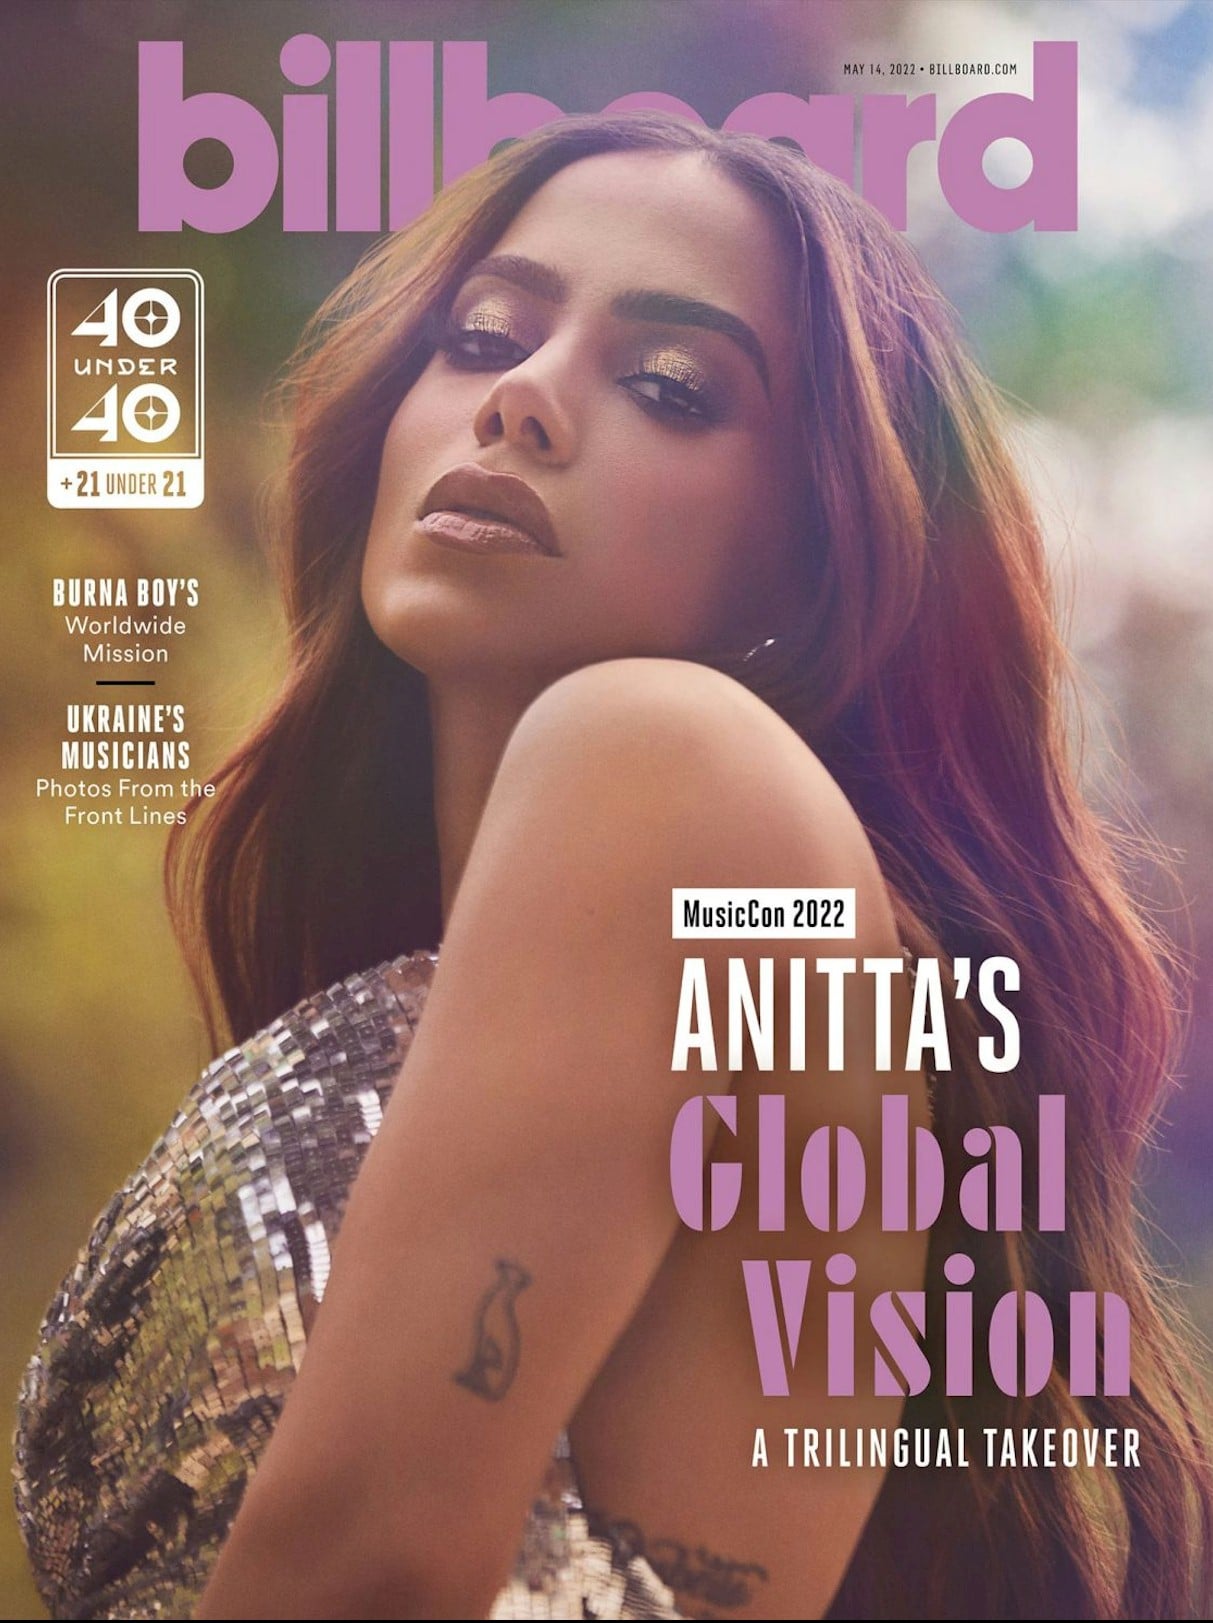 Anitta sobre carreira internacional: "Não queria me tornar uma piada"